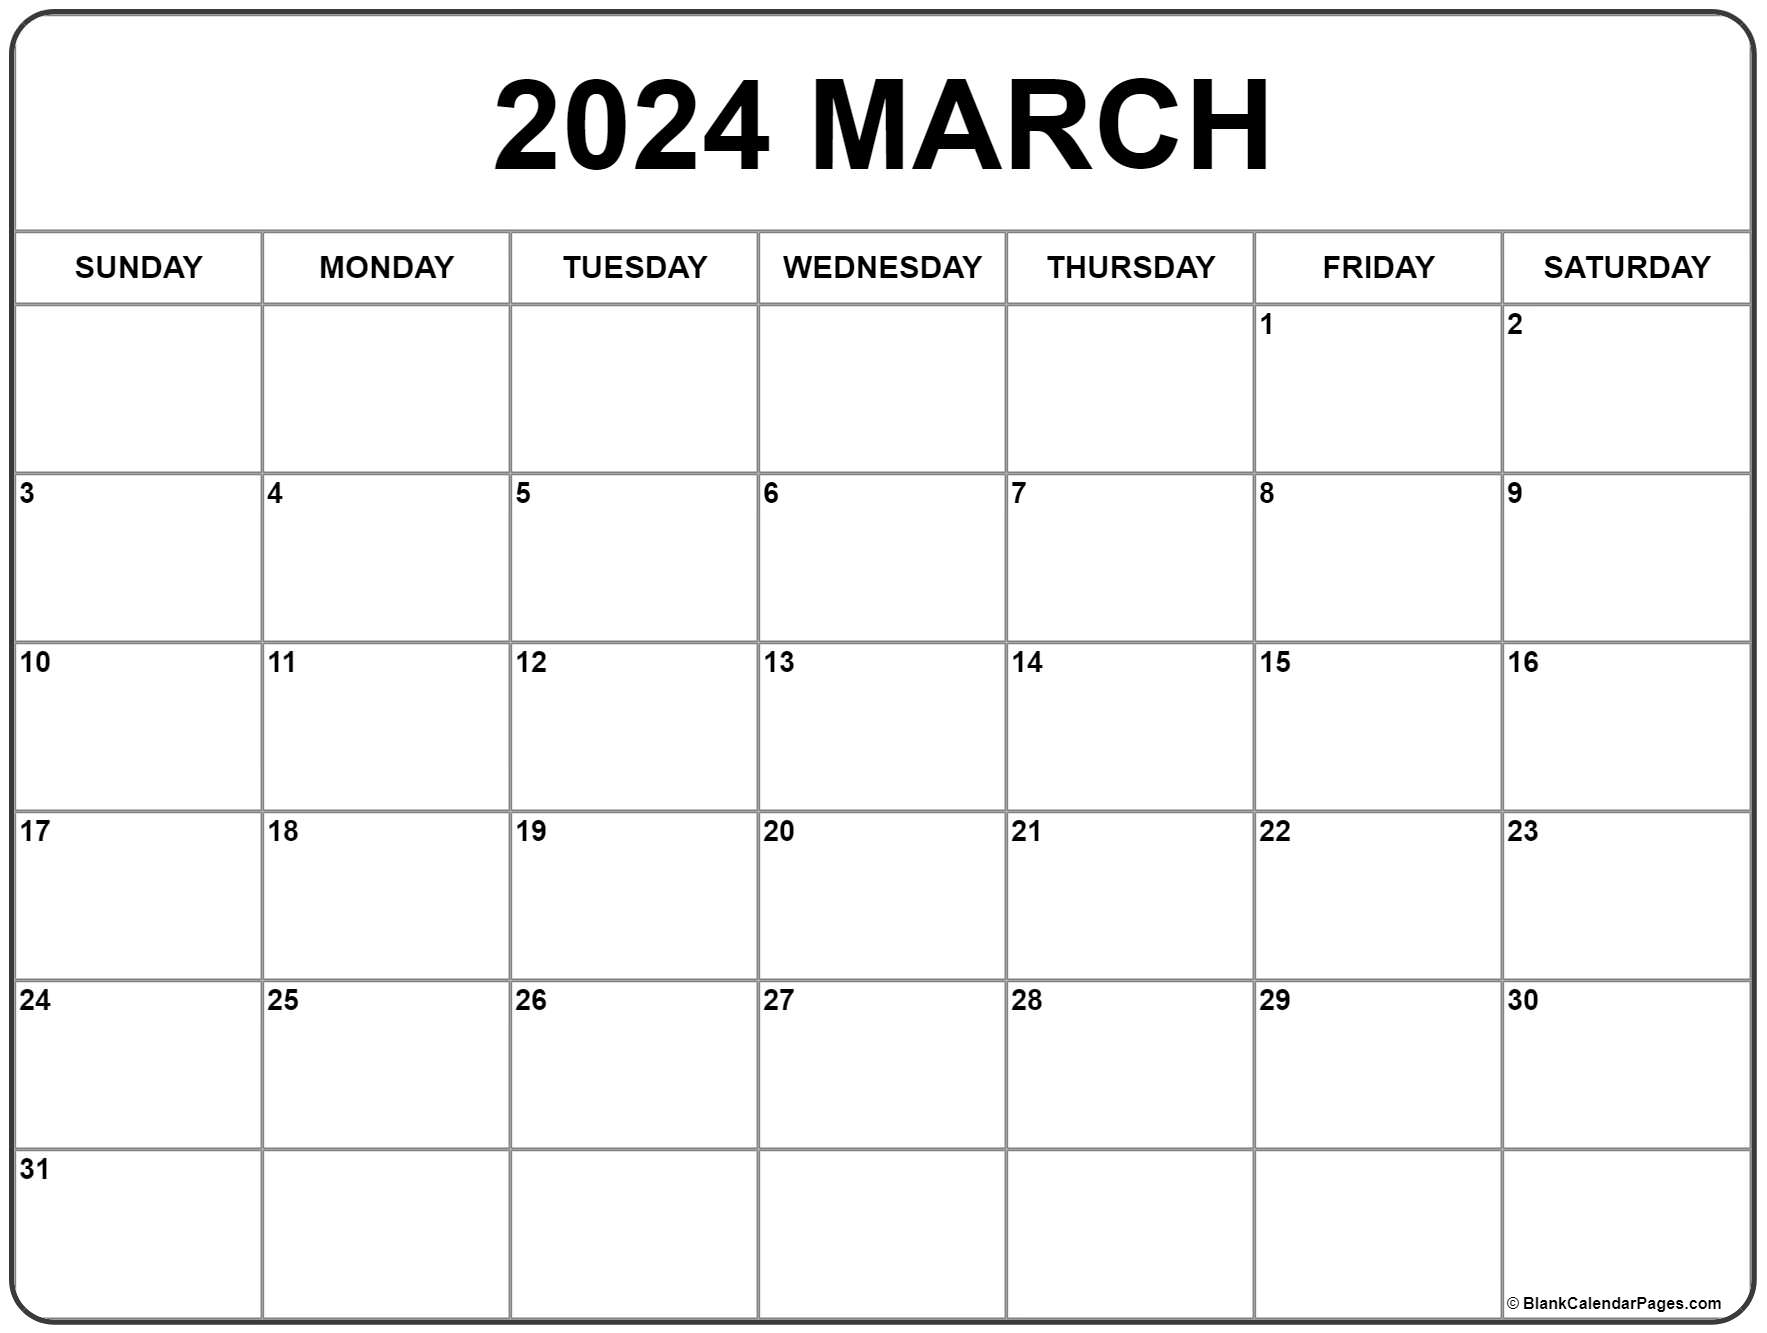 March Calendar For 2022 March 2022 Calendar | Free Printable Calendar Templates